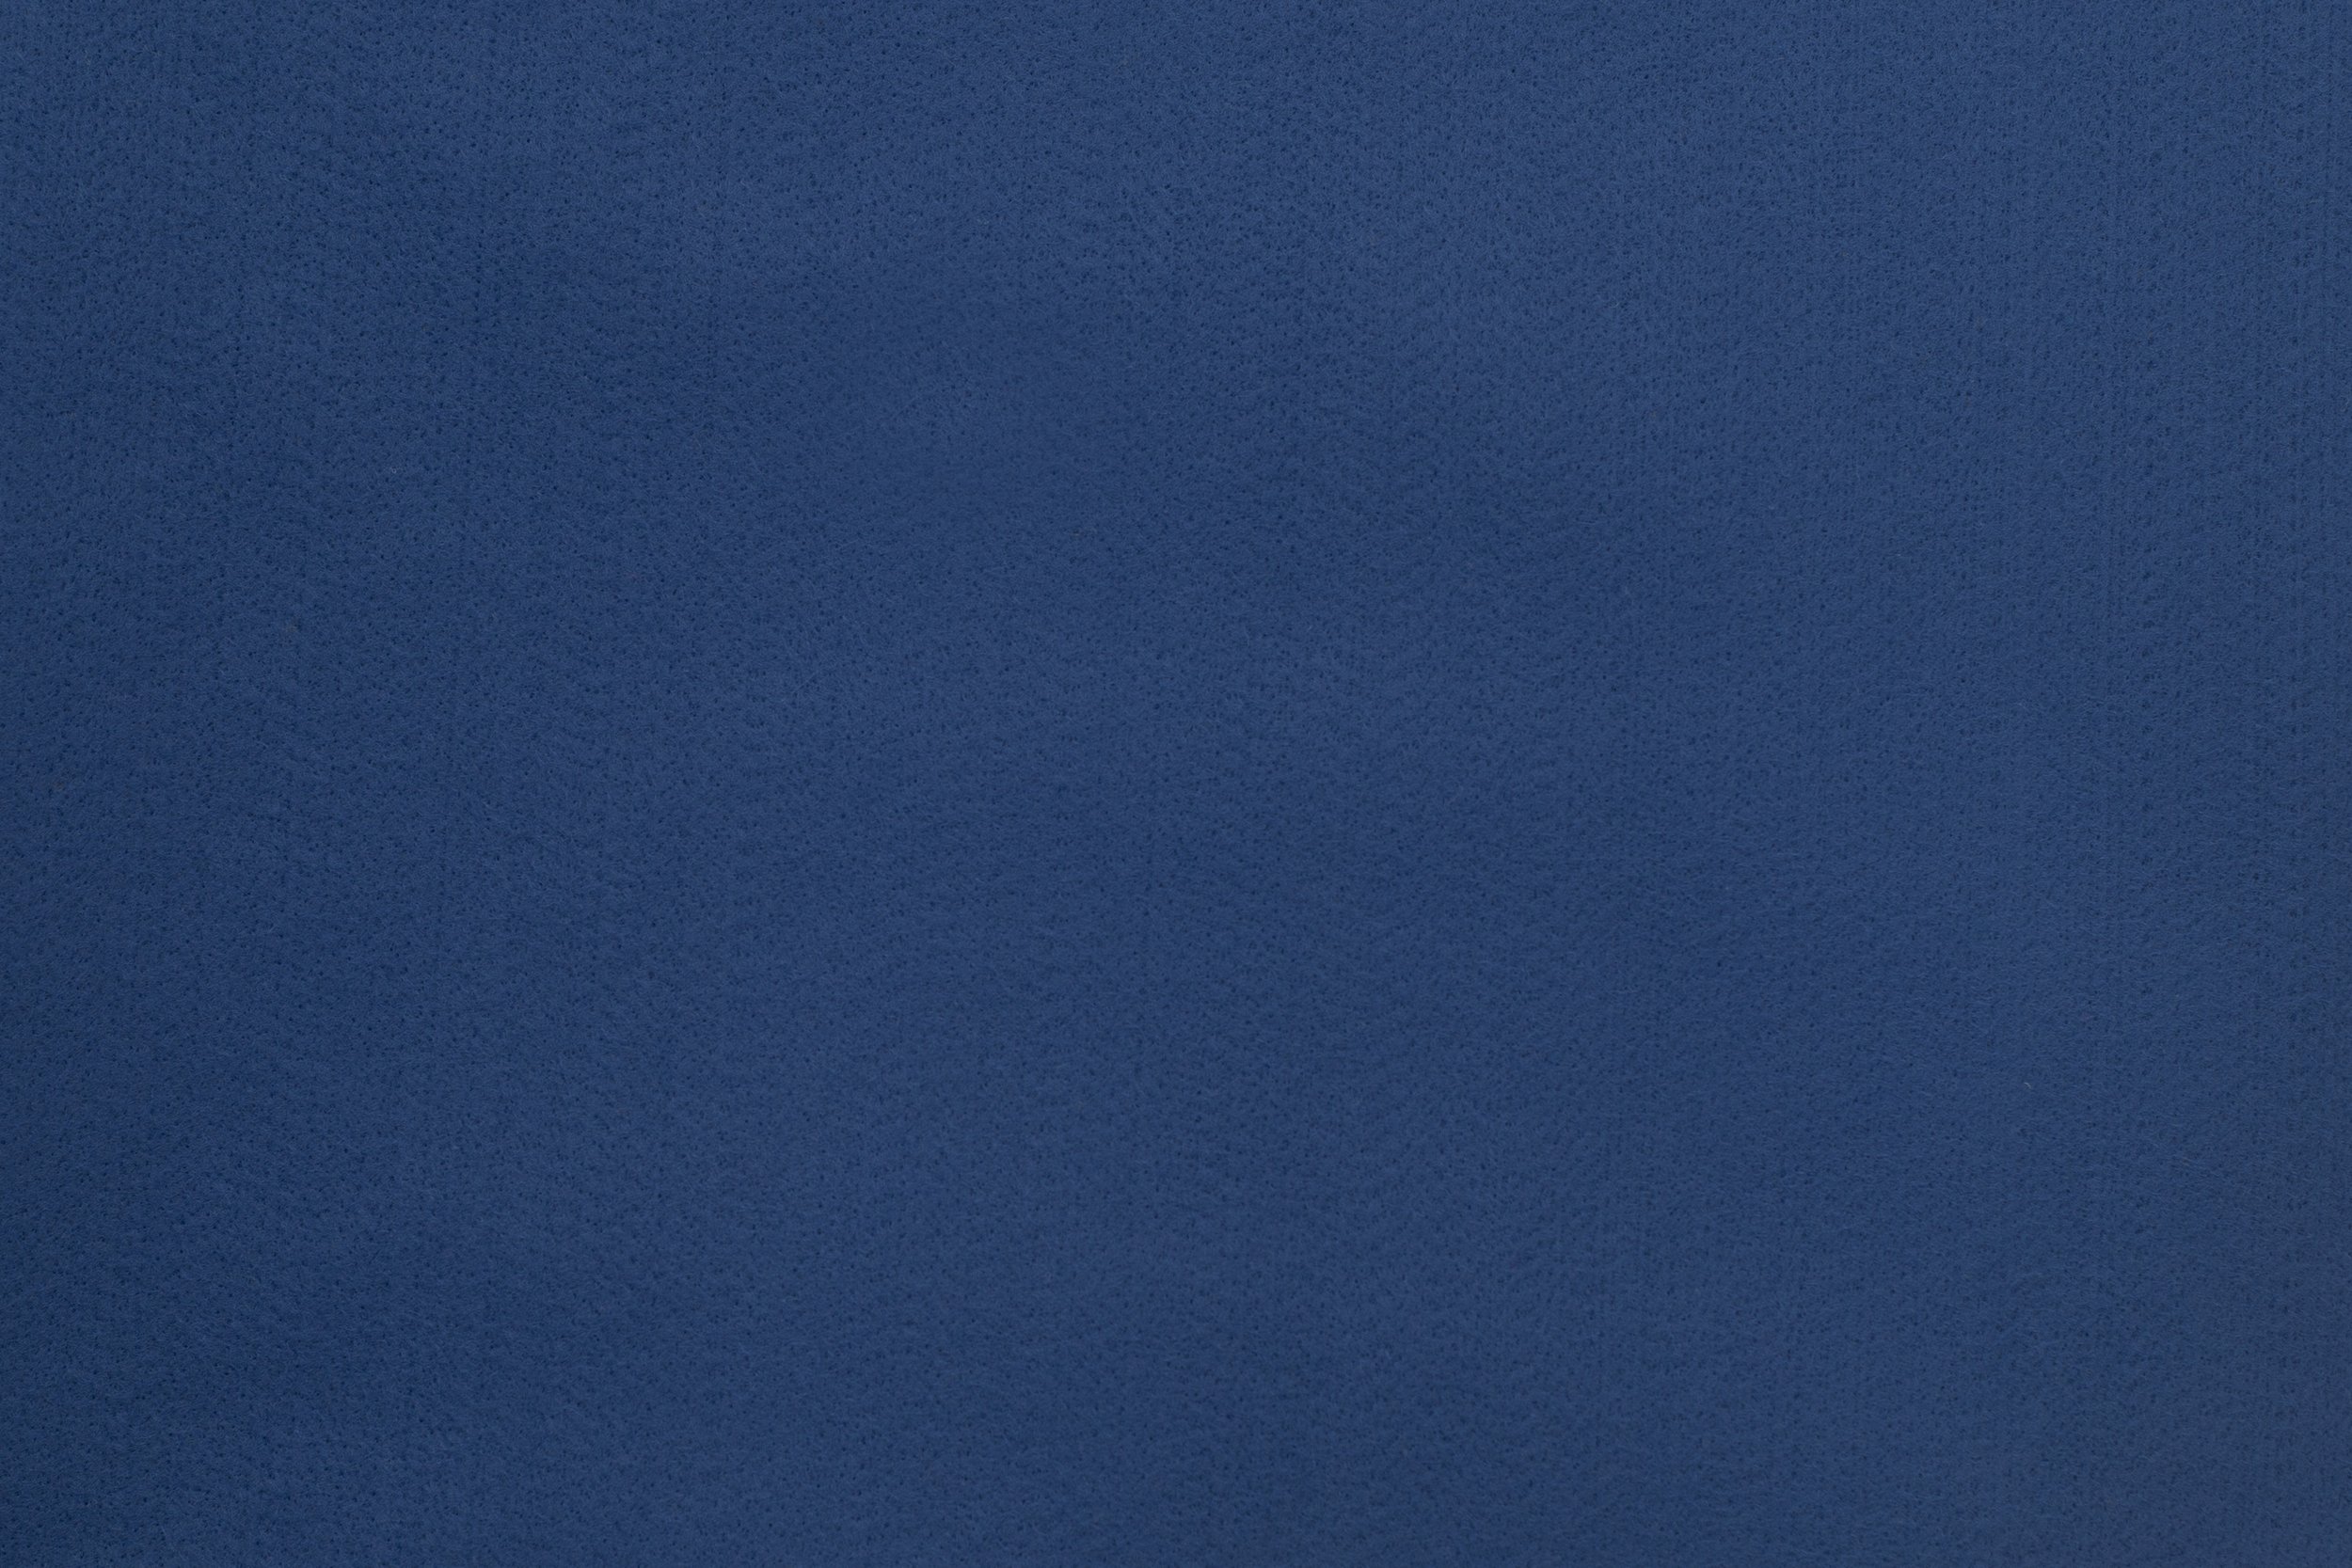 031 - Feltro Azul Royal - 50x70cm — Artiq Textiles